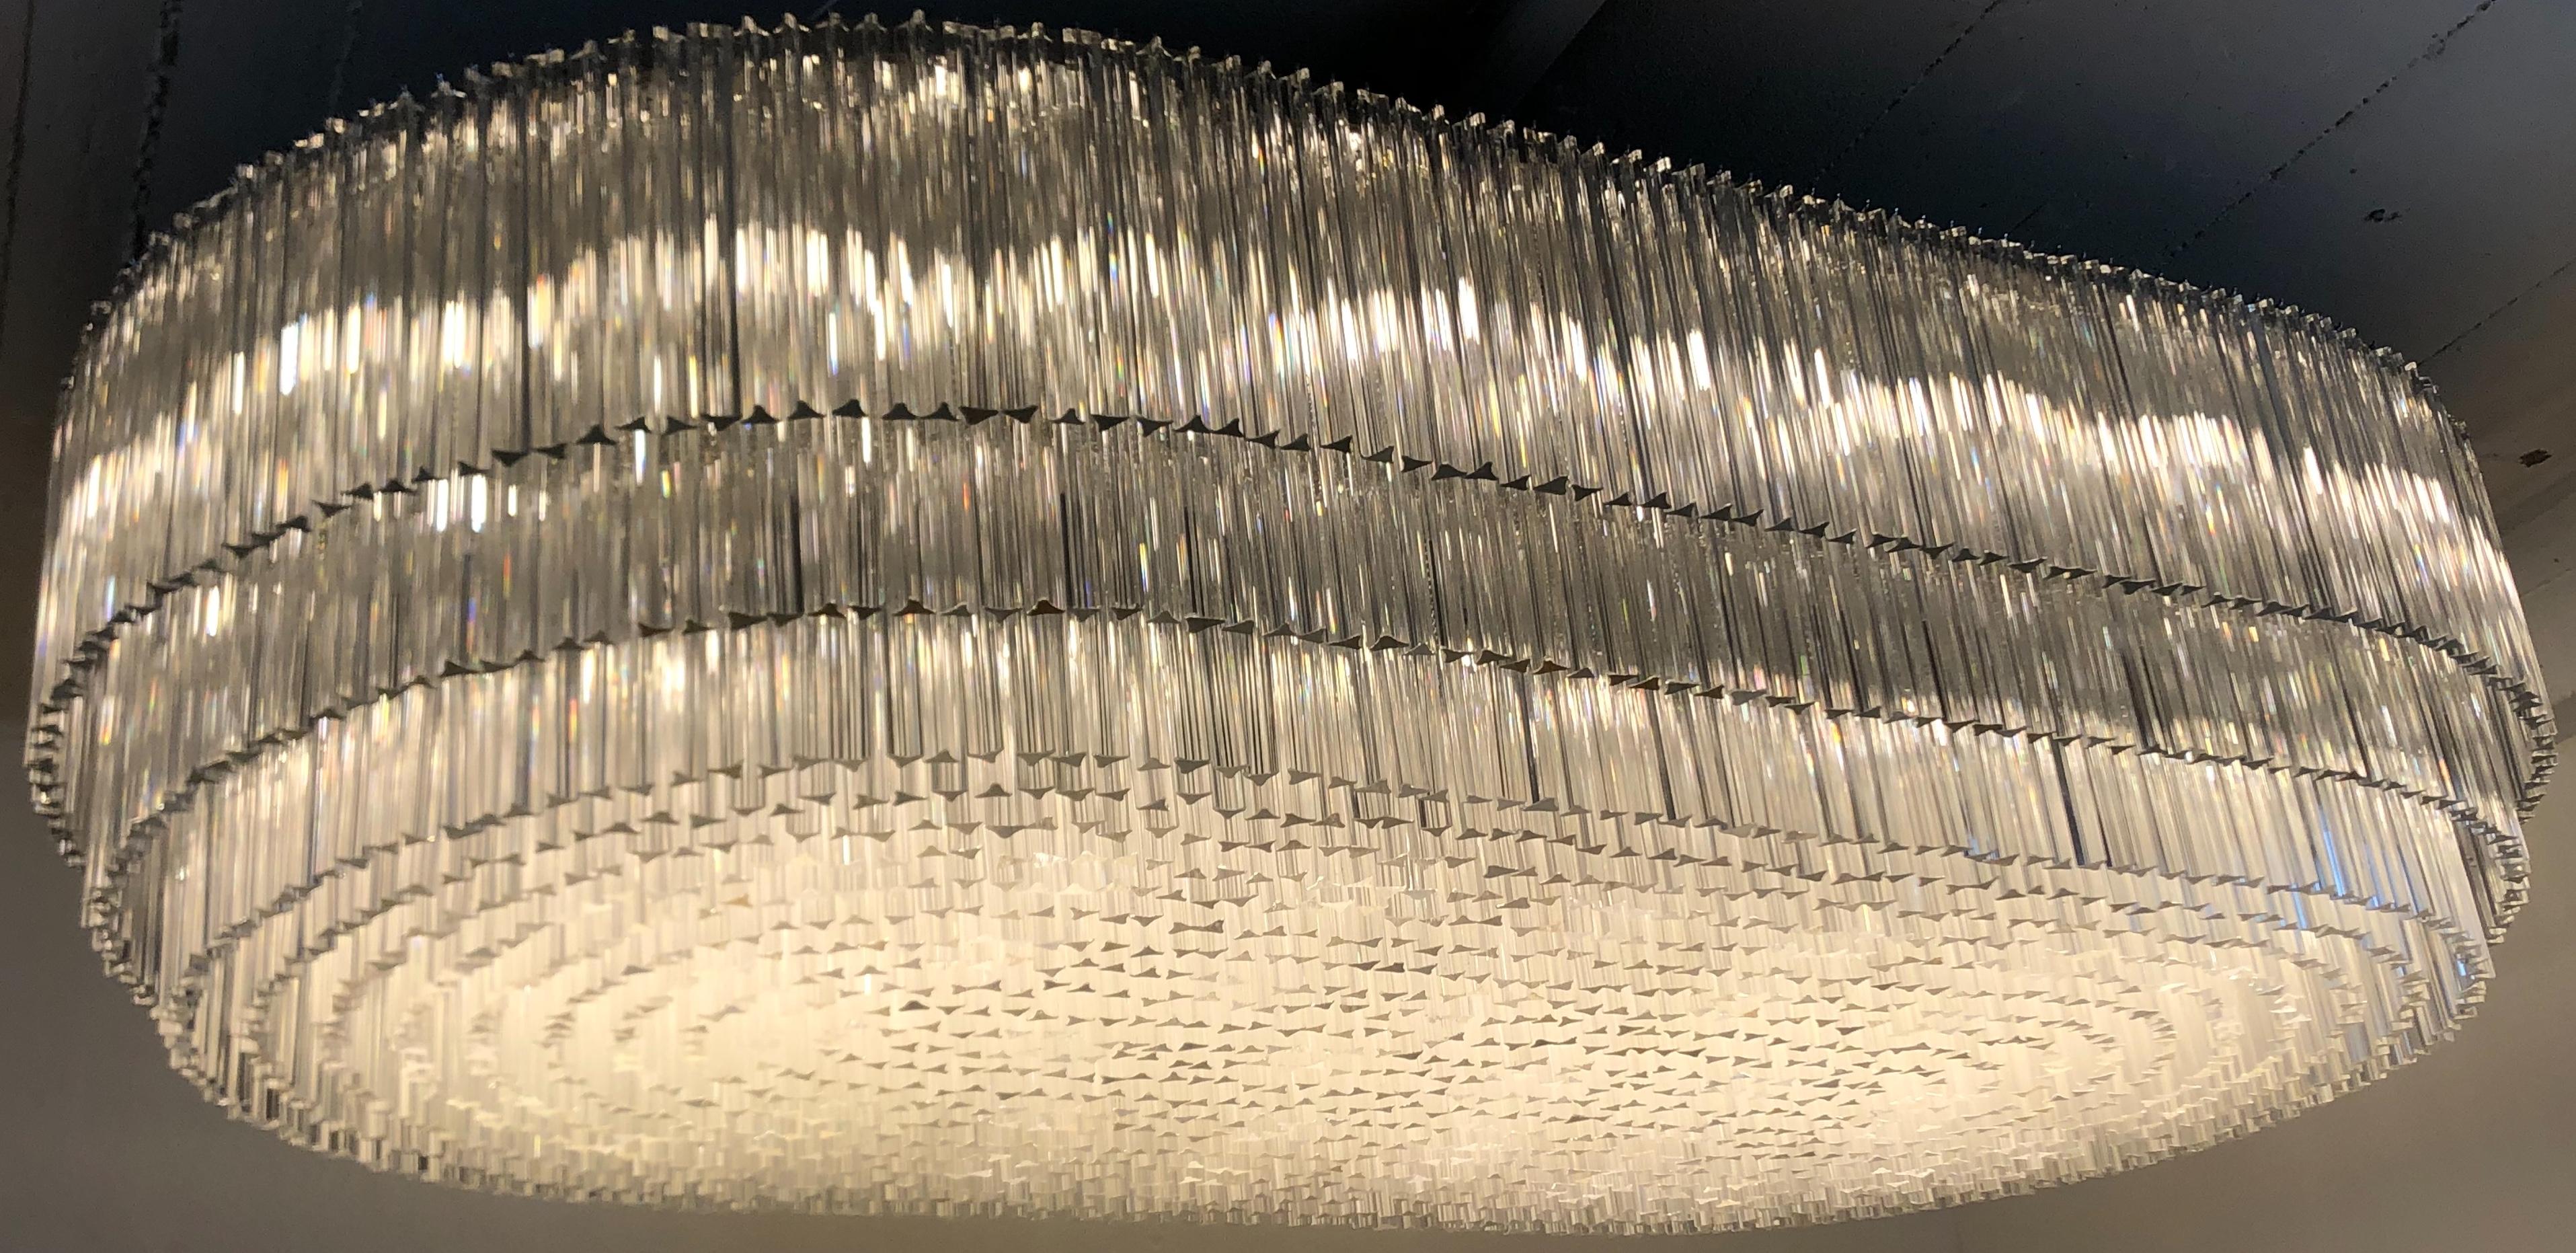 Erstaunlich, monumentale Mitte des Jahrhunderts siebzig - Licht ovalen Glas-Kronleuchter mit 1935 versuchtri Murano Klarglas Stäbe in vier verschiedenen Größen.
Der Rahmen besteht aus zwei Teilen, die zusammengeschraubt werden, und vier